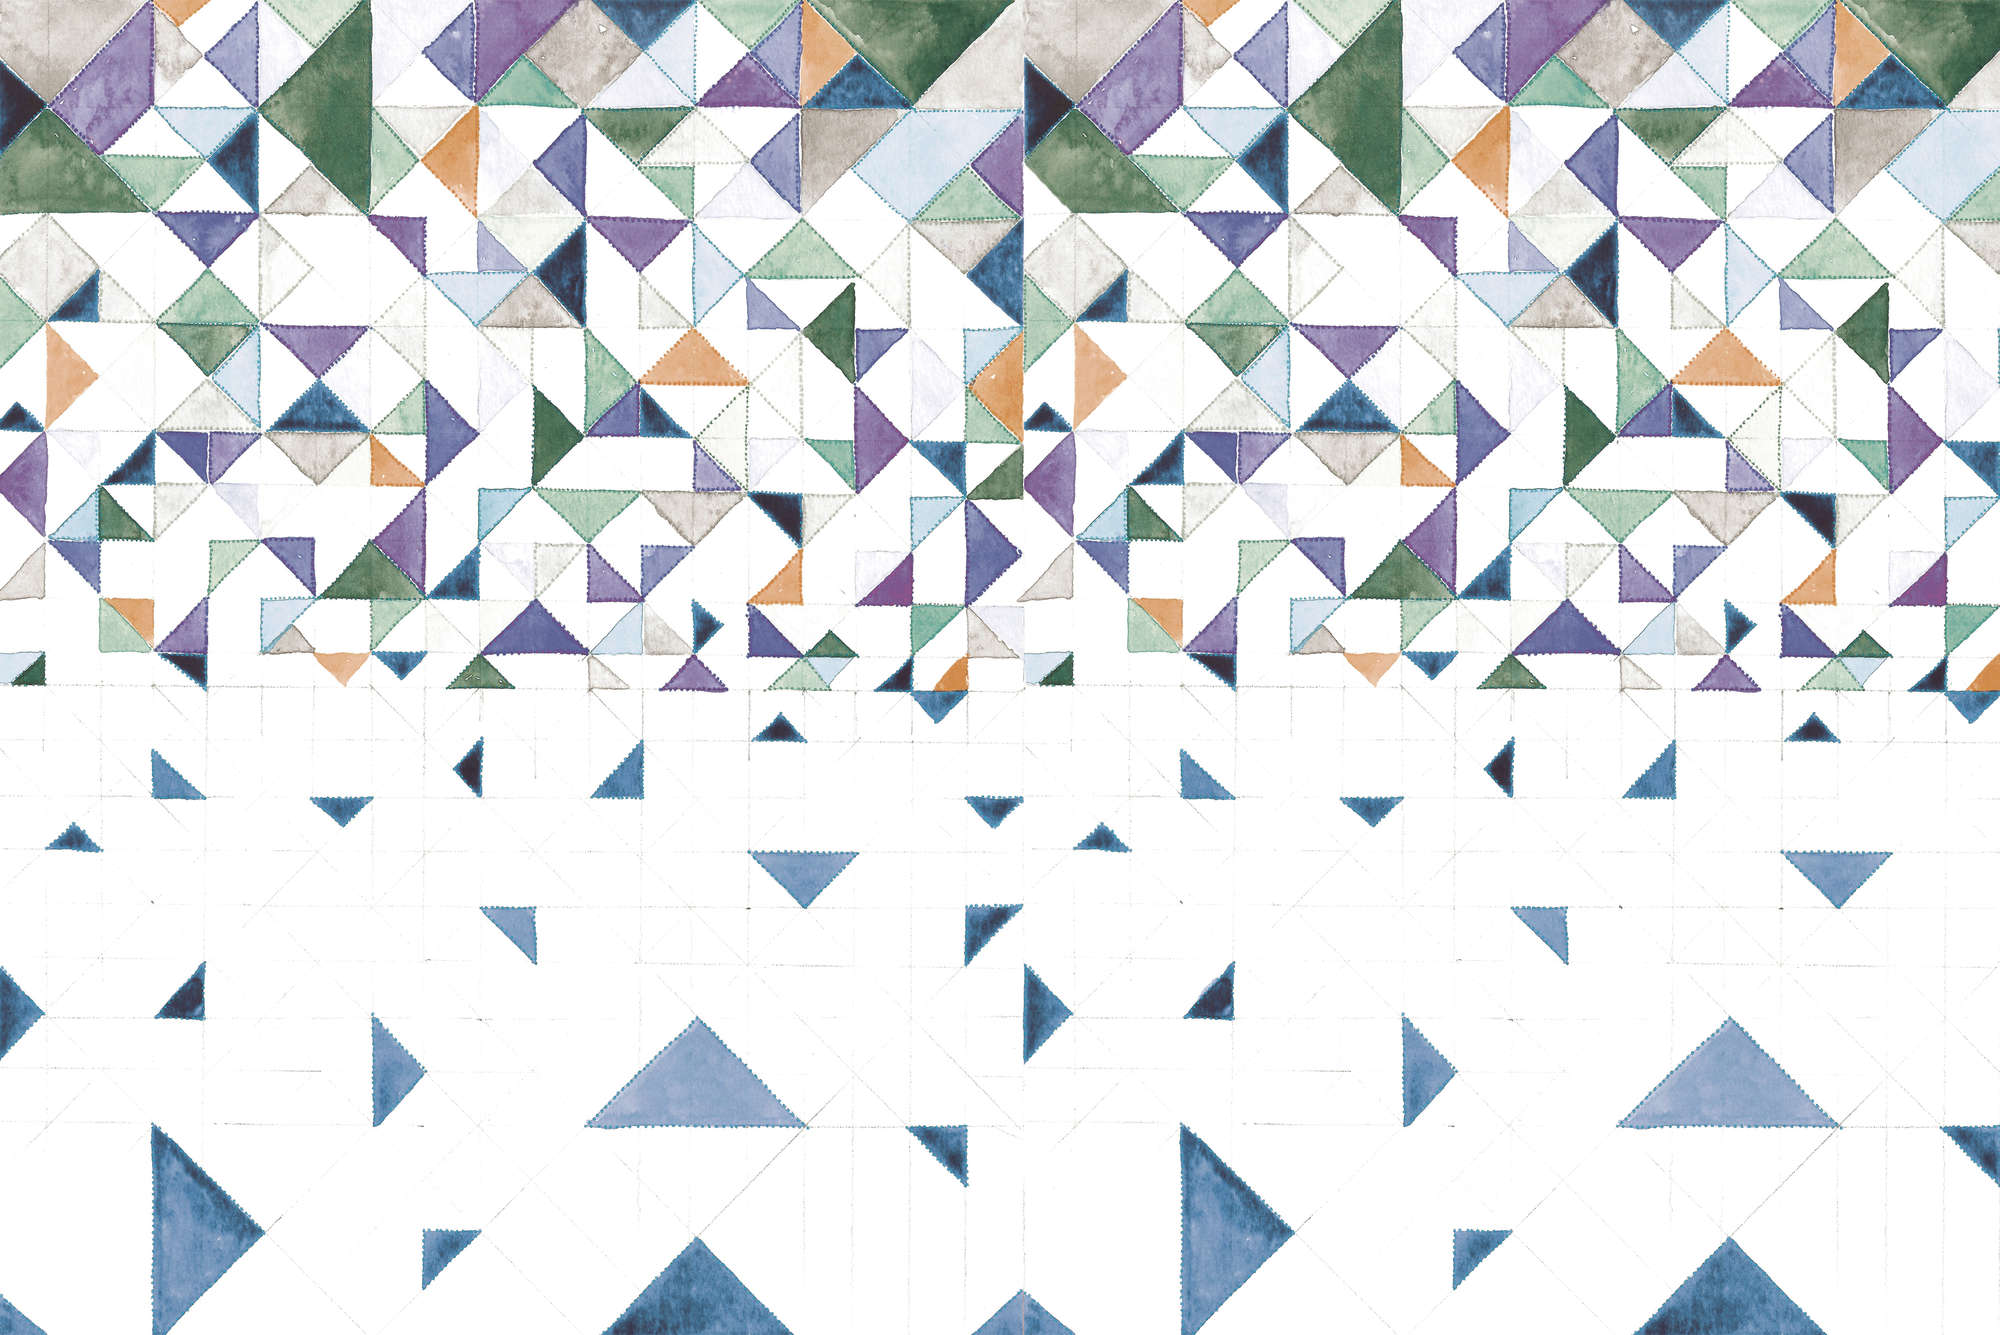             Papel pintado gráfico con motivo de triángulos sobre vellón liso nacarado
        